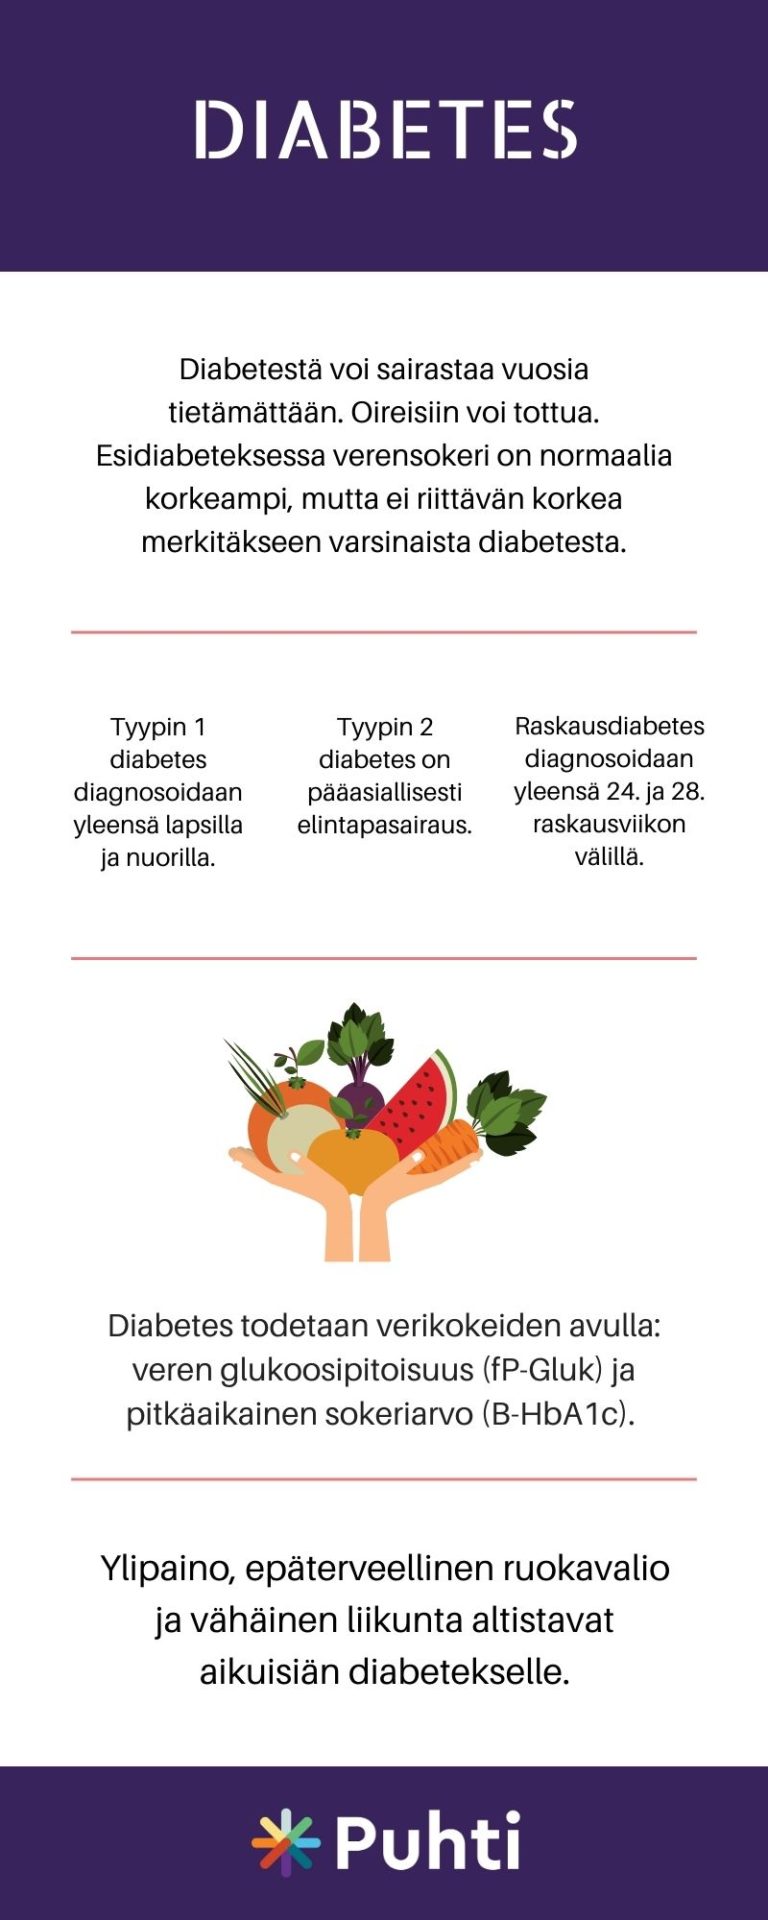 Diabetes eli sokeritauti on salakavala sairaus